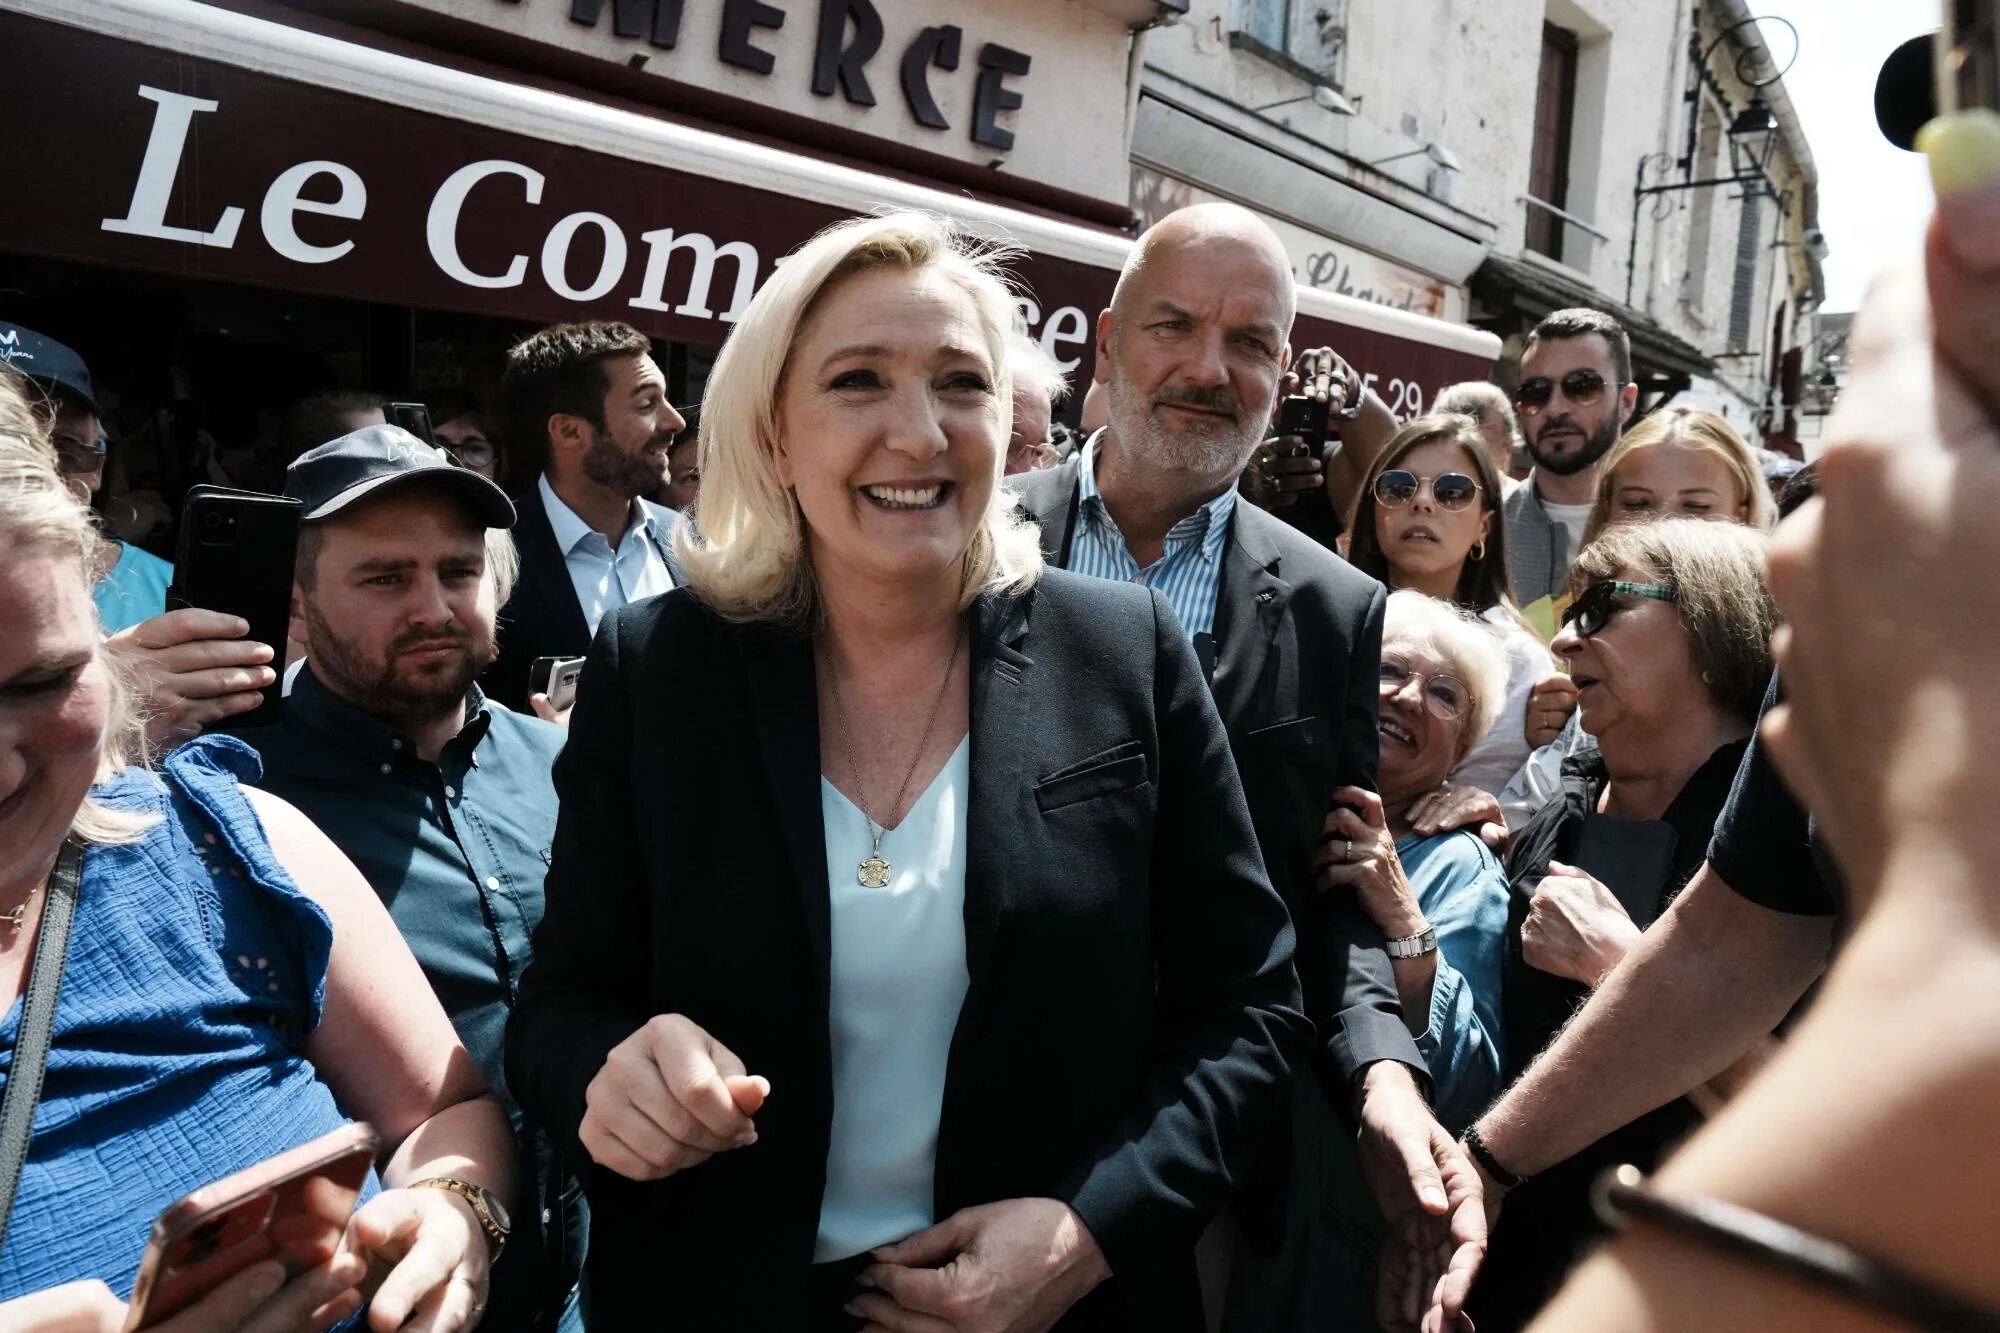 Франция изменилась. Парламентские выборы во Франции 2022 Ле пен. Марин Ле пен в купальнике. Франция выборы Бриджит Макрон. Marine le Pen 2017 агитация президентские выборы.